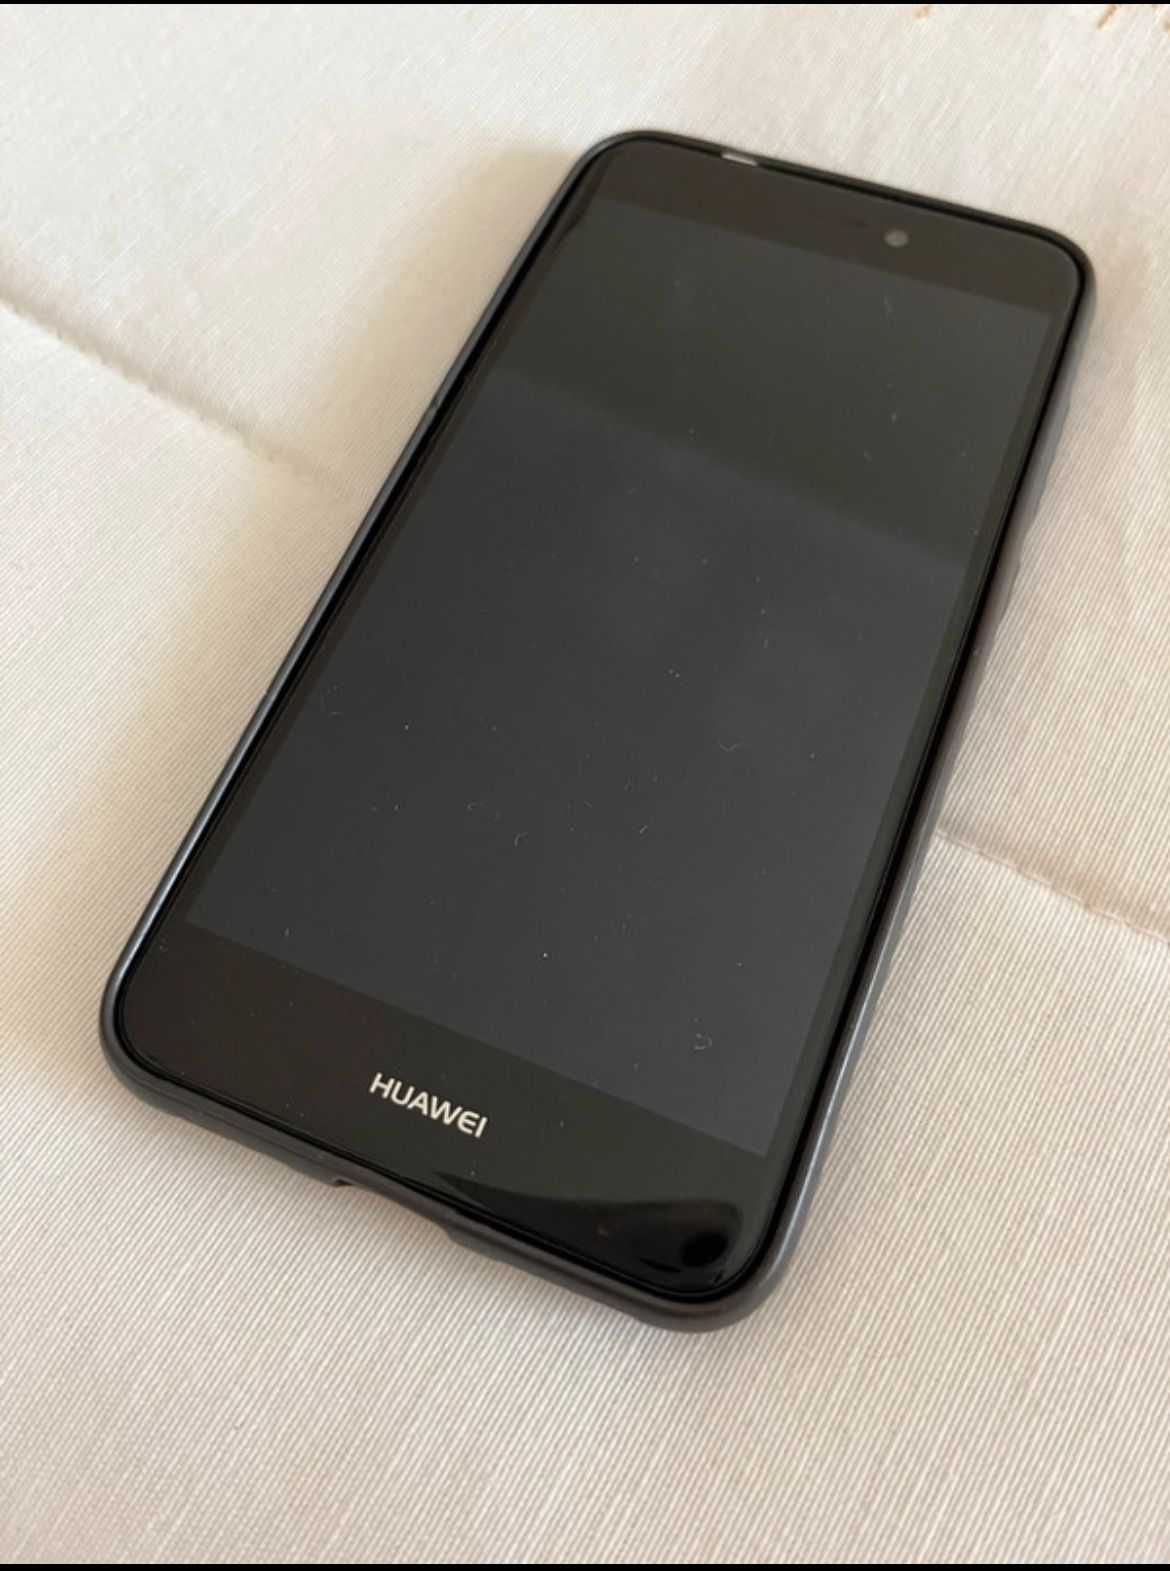 Telemóvel Huawei P8